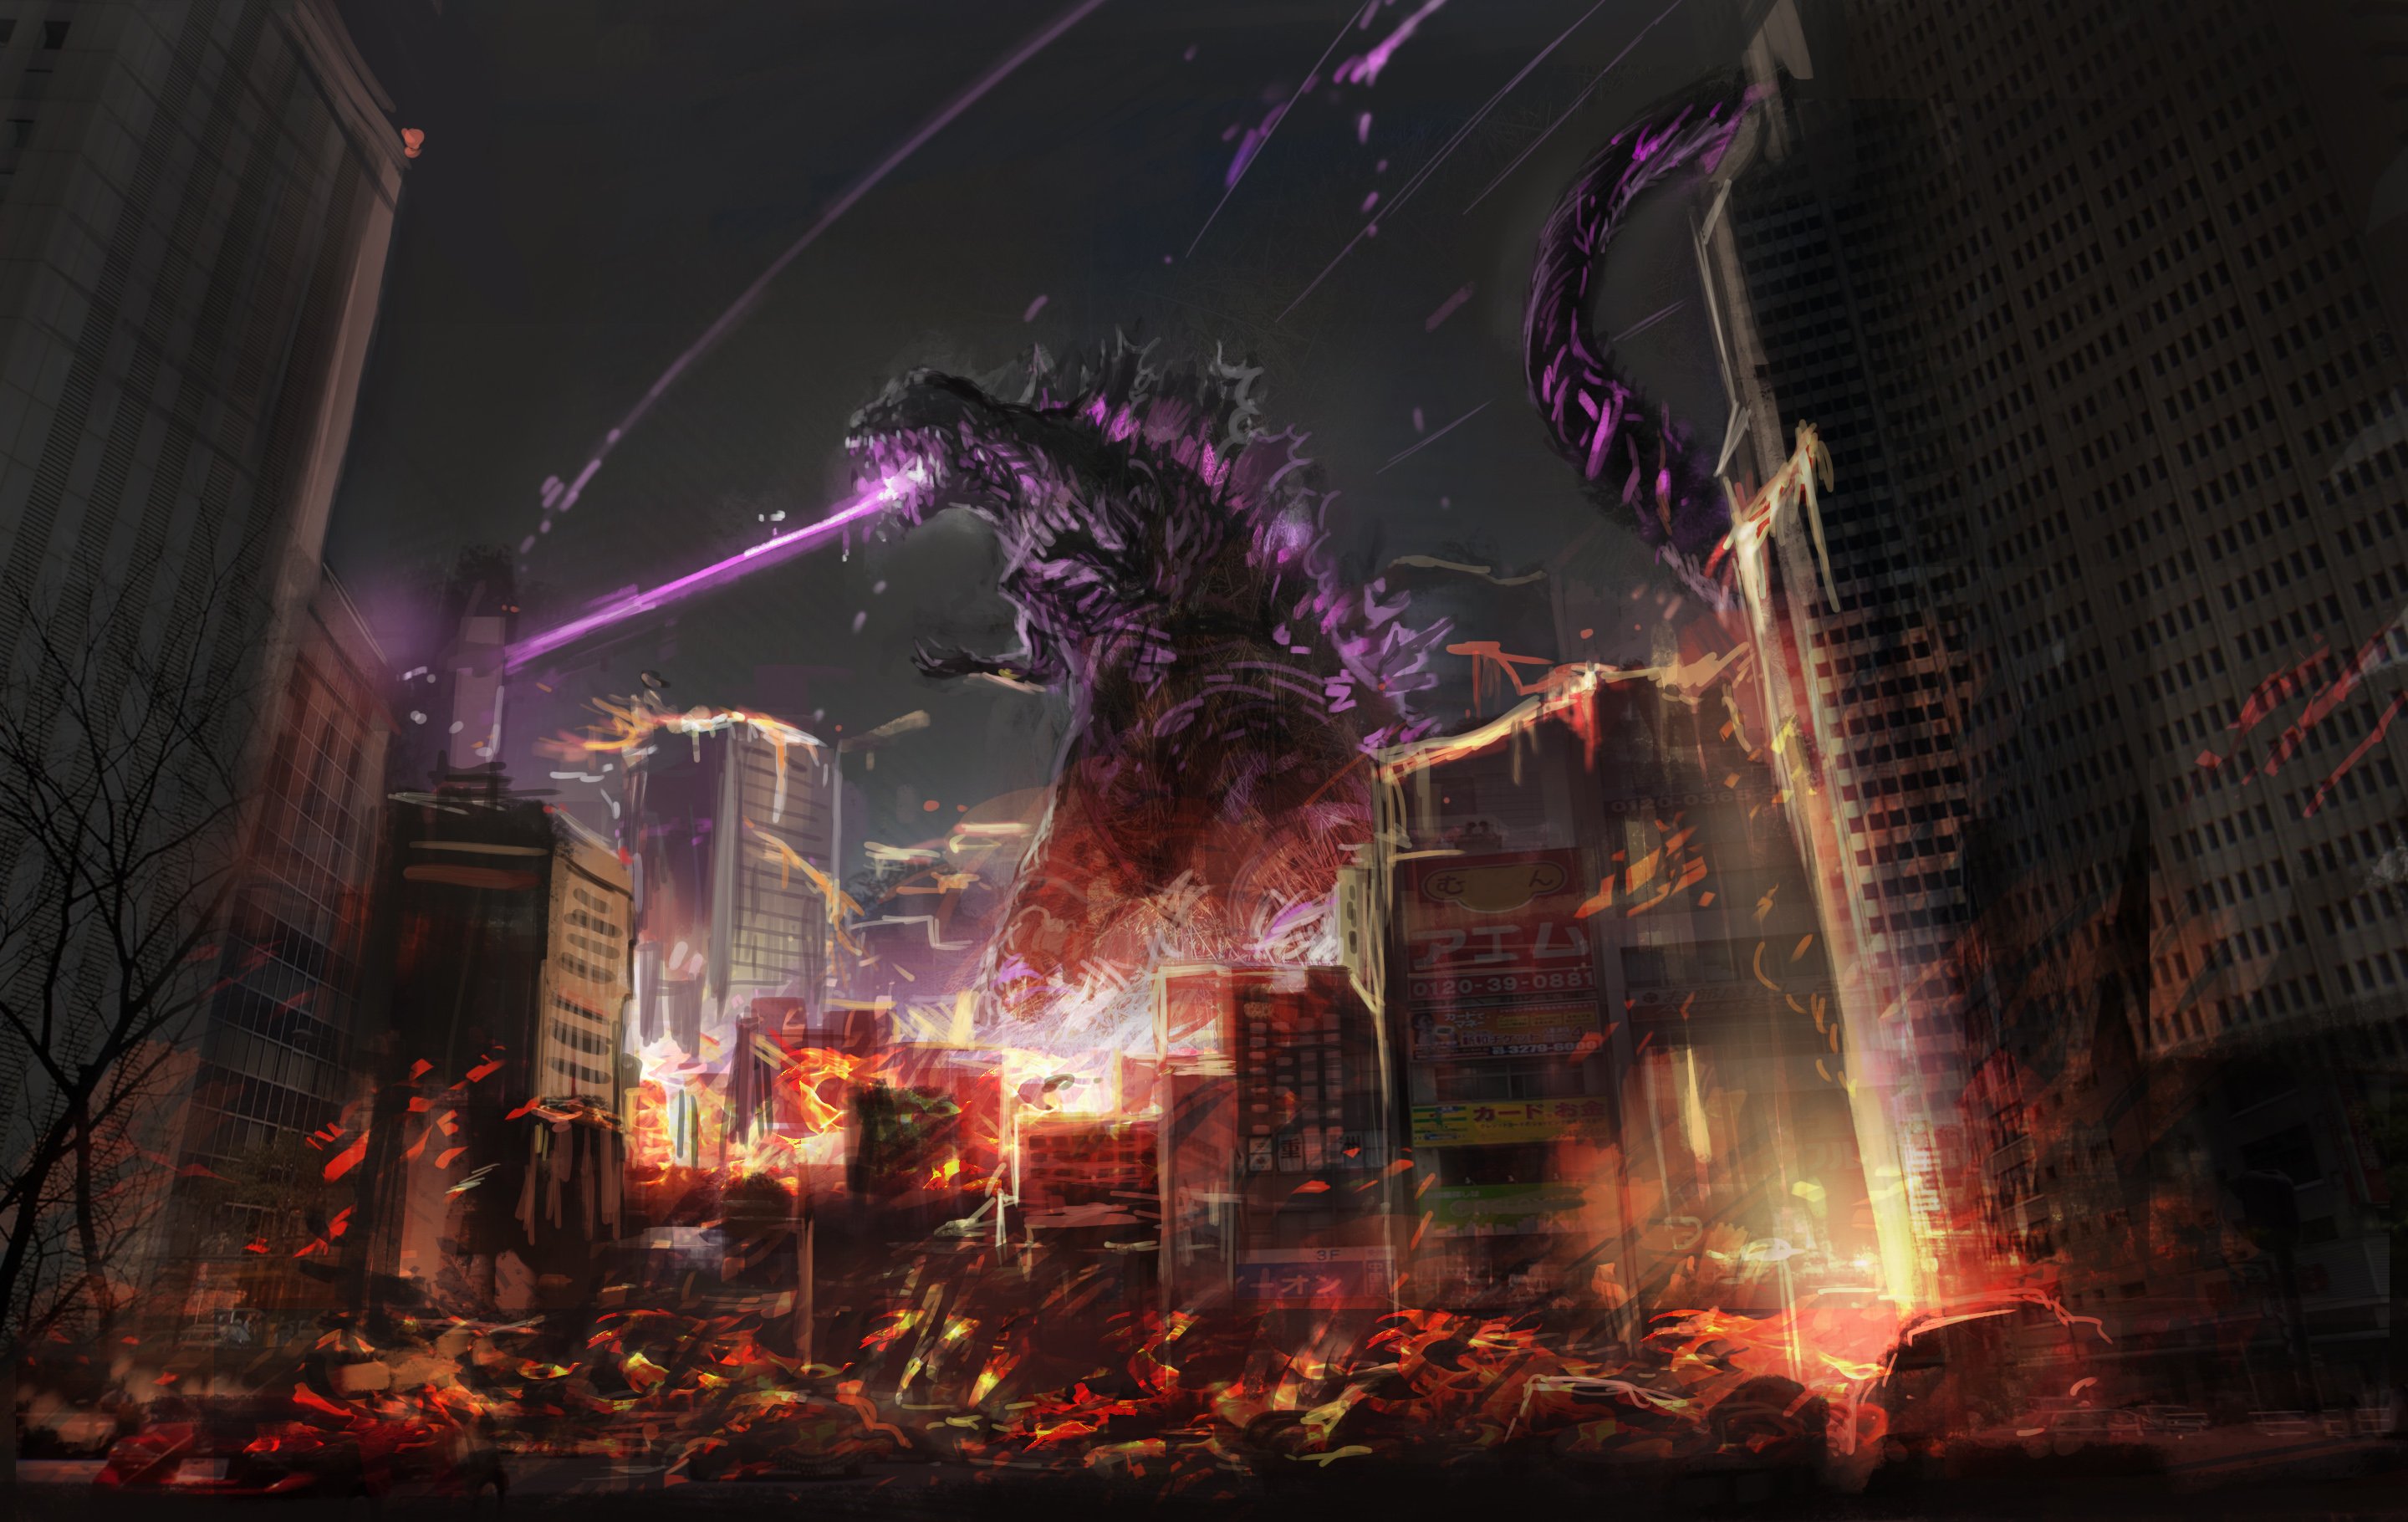 Godzilla Fan Art, HD Artist, 4k Wallpaper, Image, Background, Photo and Picture